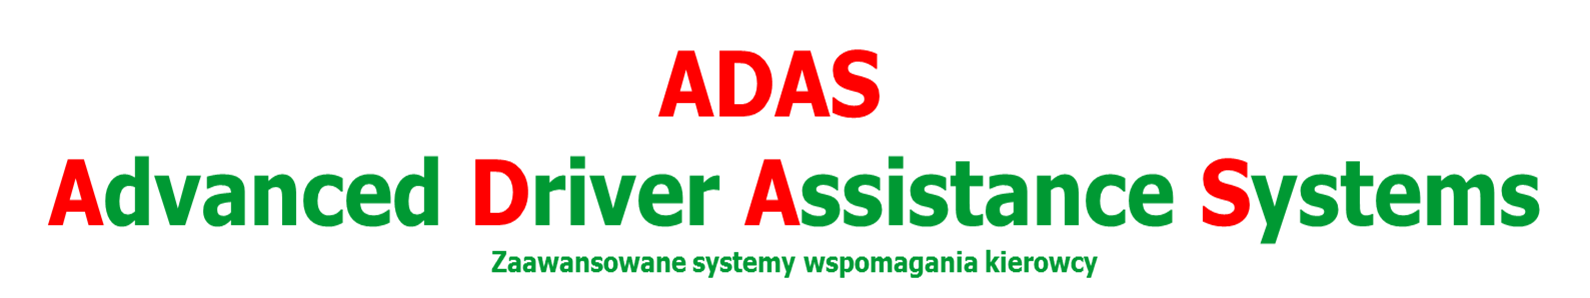 ADAS - Zaawansowane systemy wspomagania kierowcy